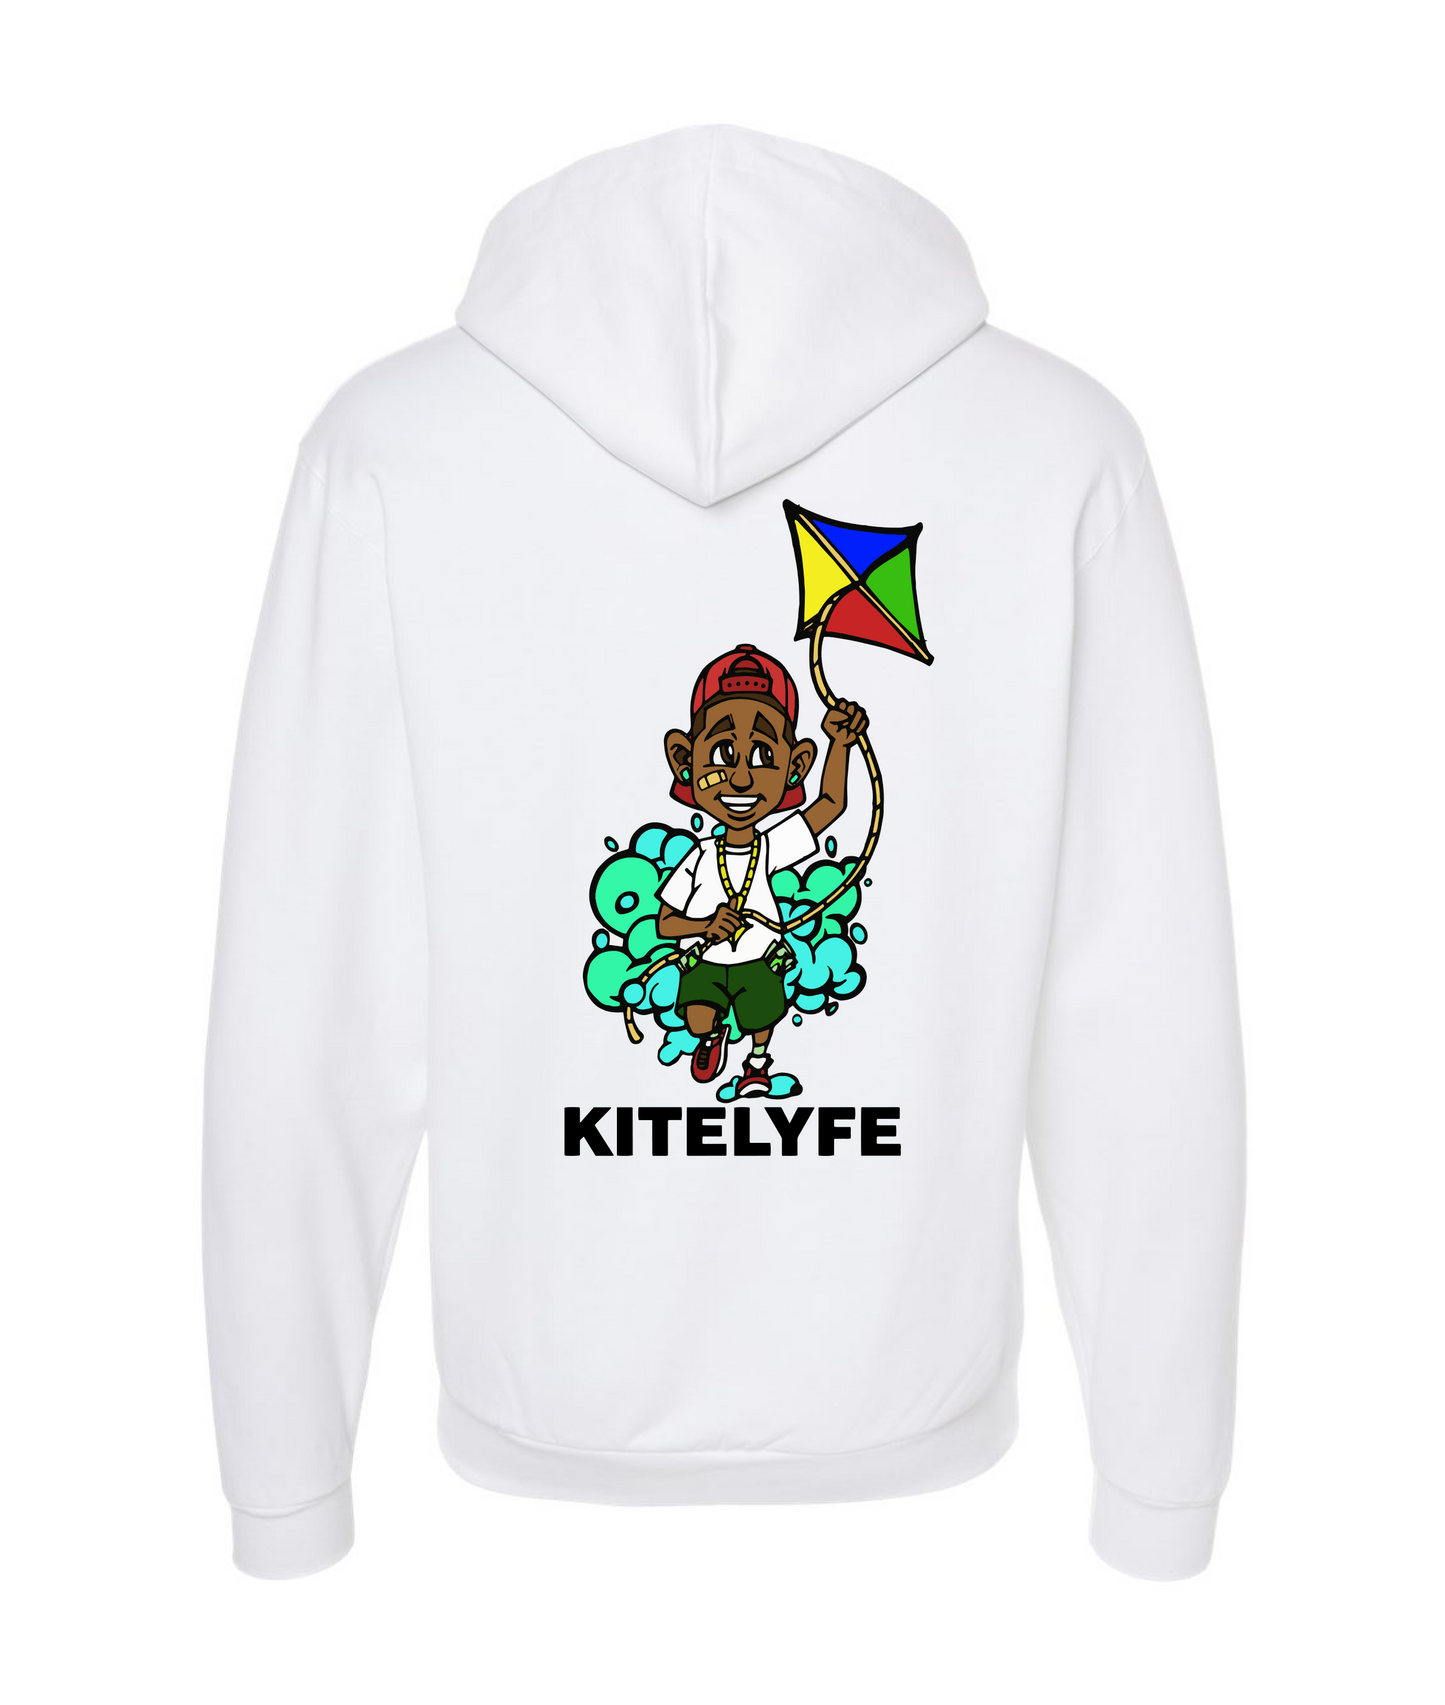 Kitelyfe - 4EVERKITED - White Zip Up Hoodie